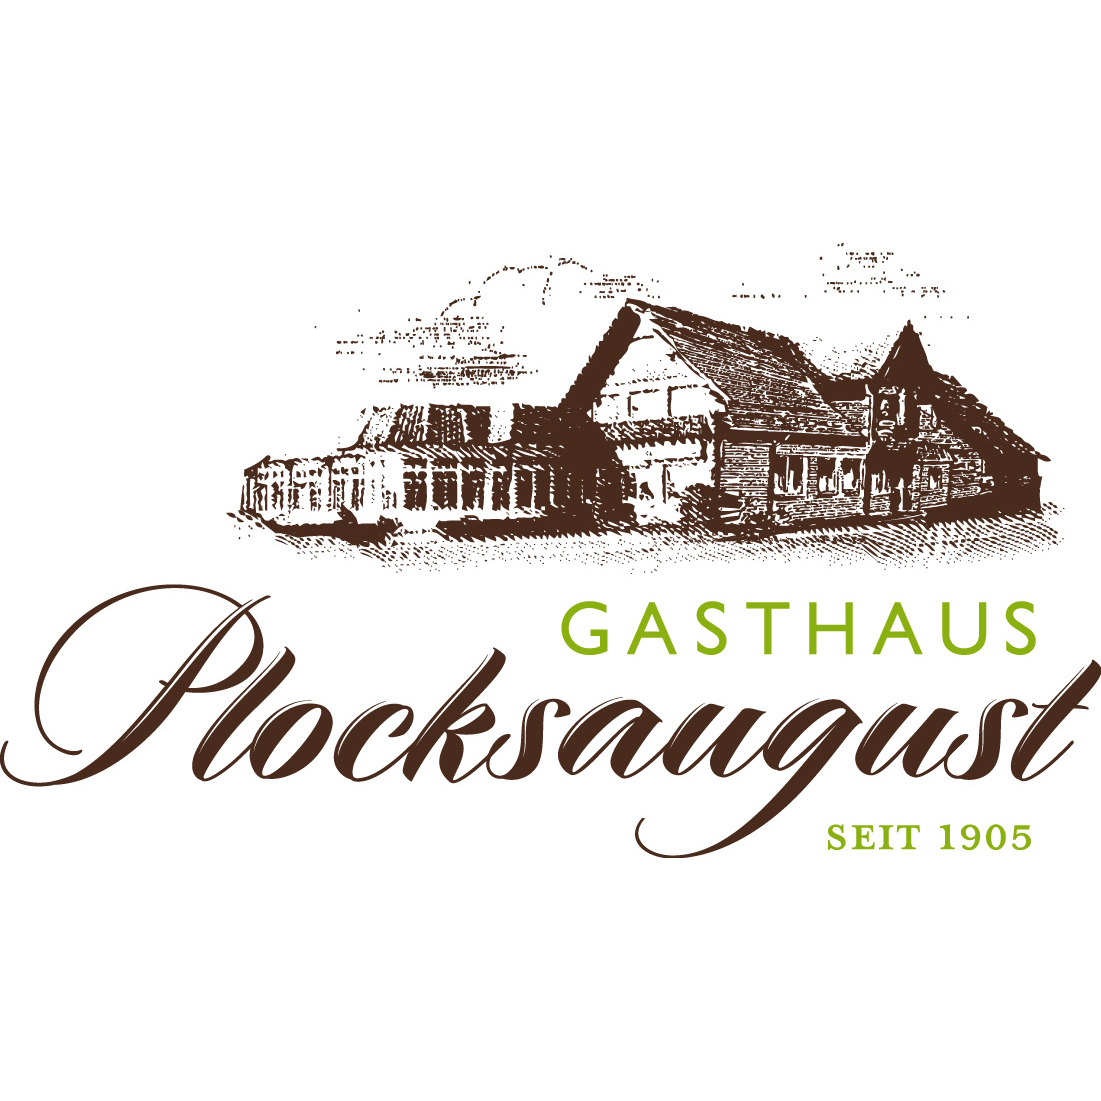 Gasthaus Plocksaugust Inh. August Winterberg in Glandorf - Logo